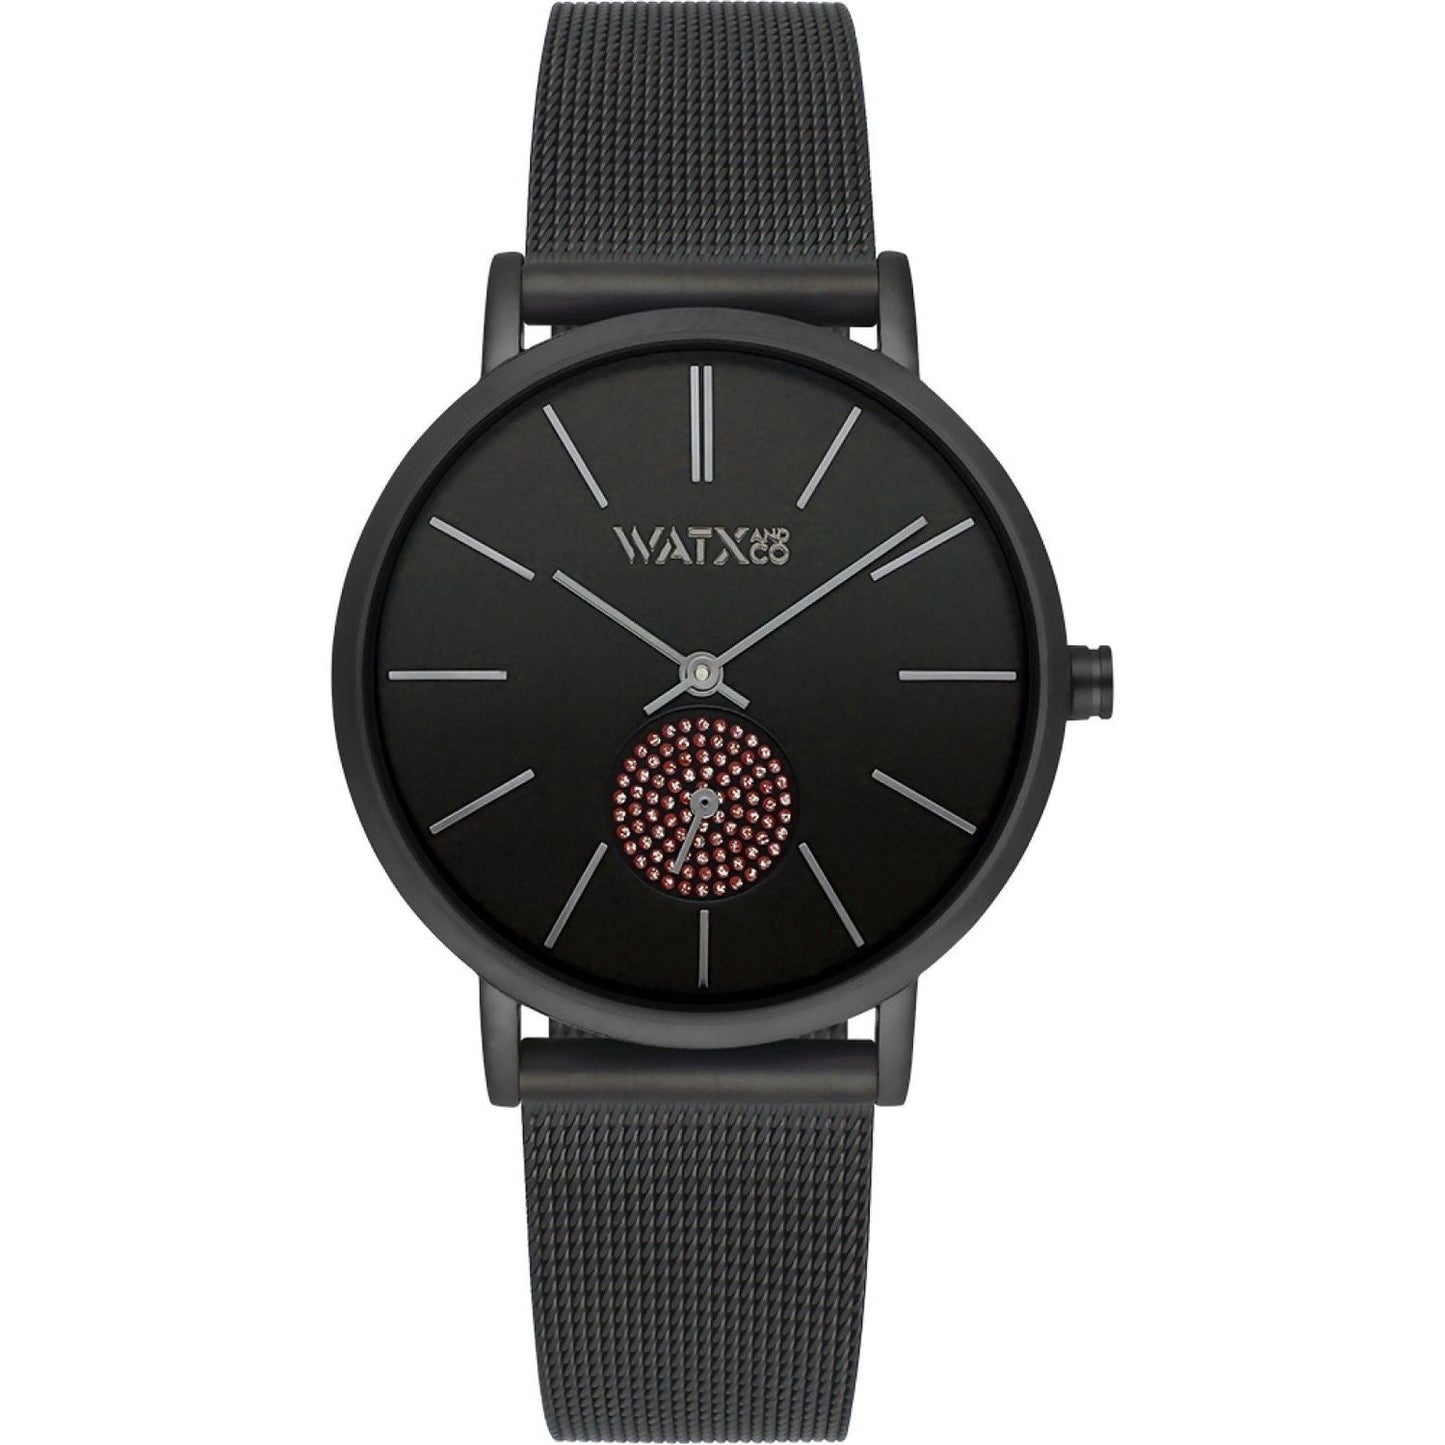 WATX&COLORS WATX&COLORS WATCHES Mod. WXCA1022 WATCHES watxcolors-watches-mod-wxca1022